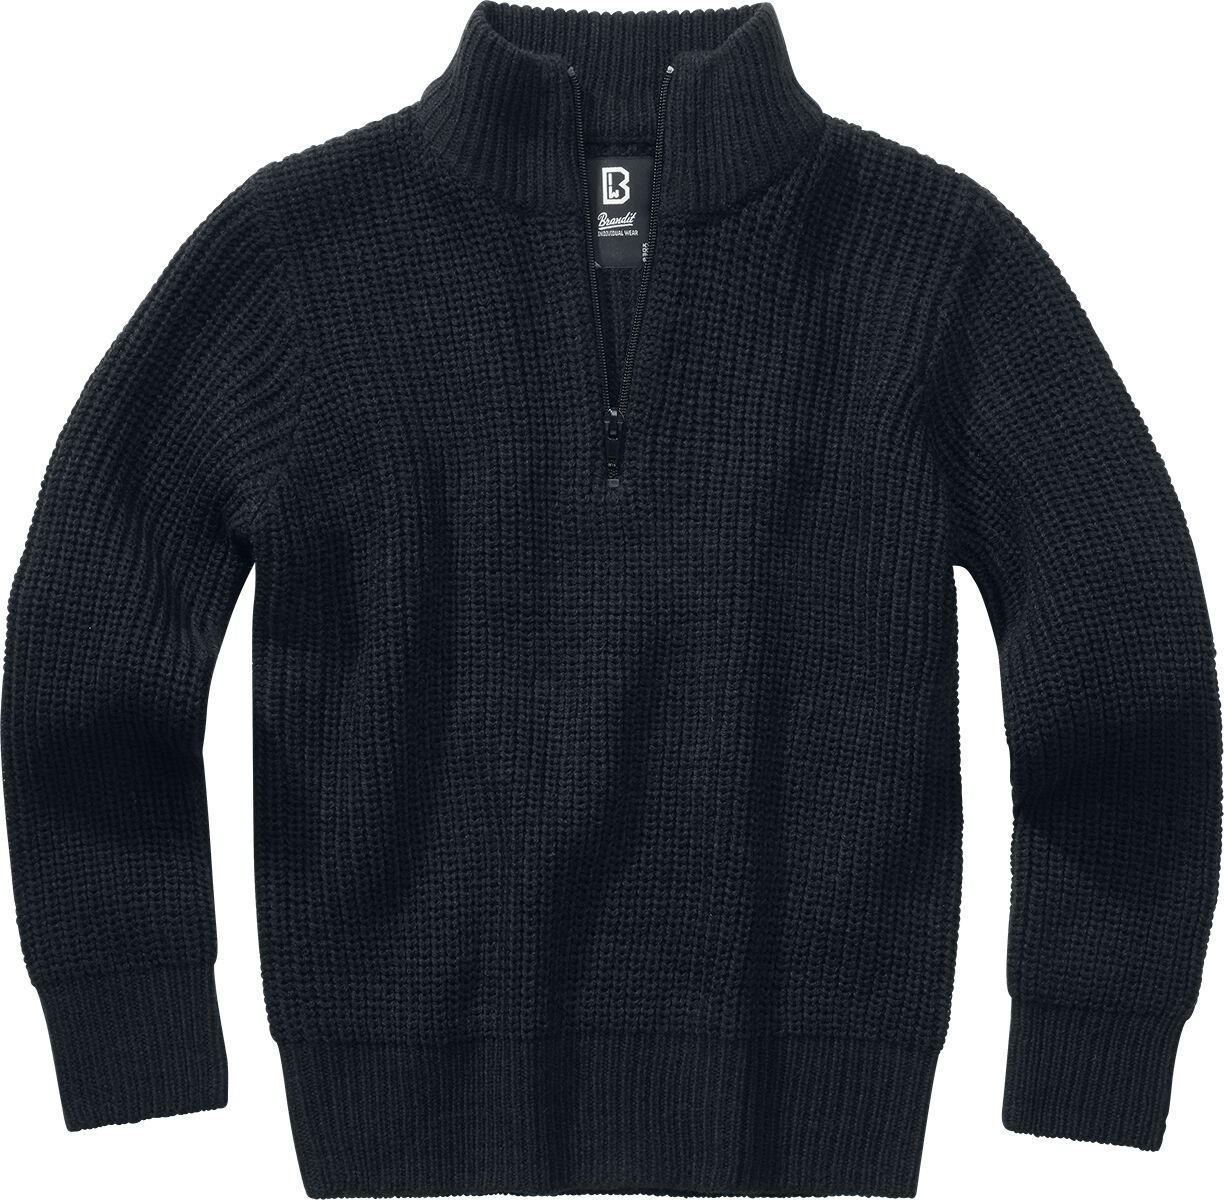 Brandit Kids Marine Troyer Sweatshirt schwarz in 134/140